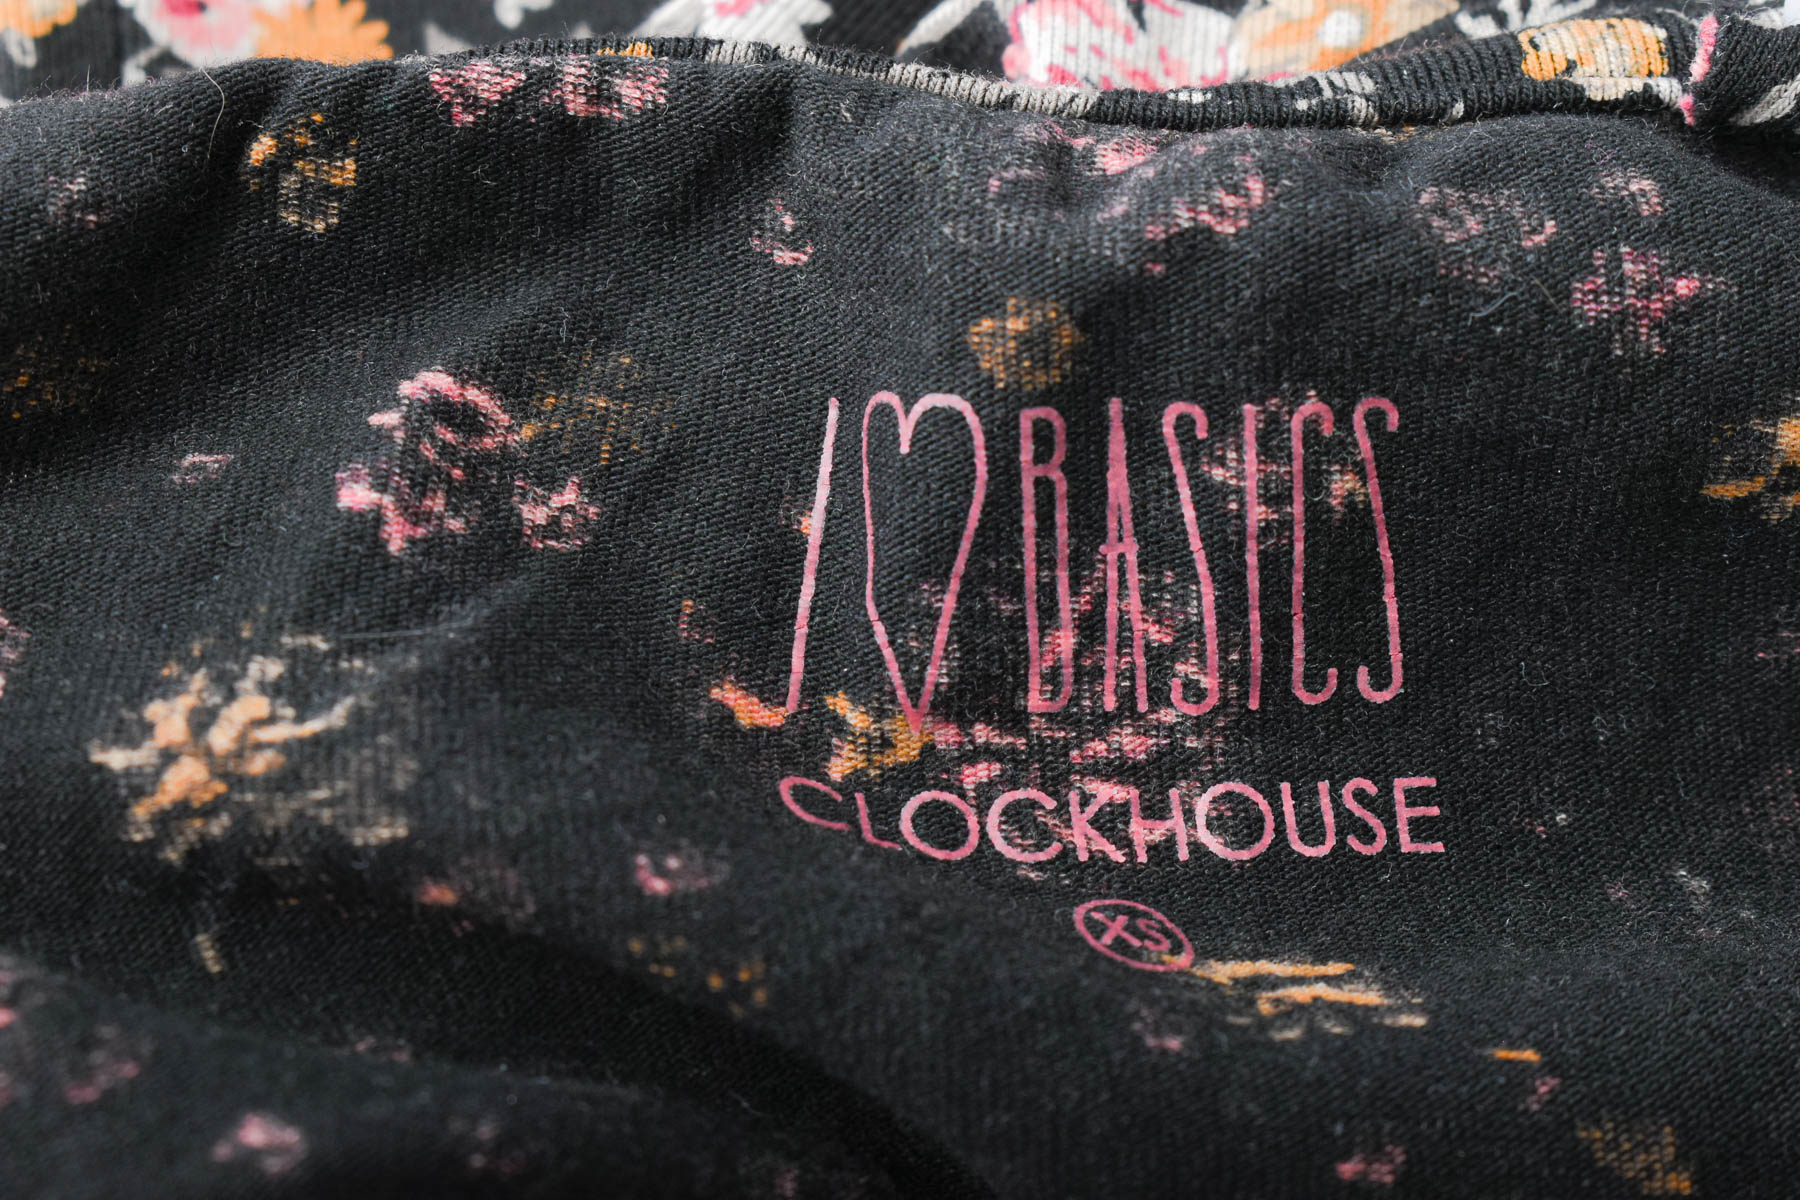 Women's t-shirt - Clockhouse - 2